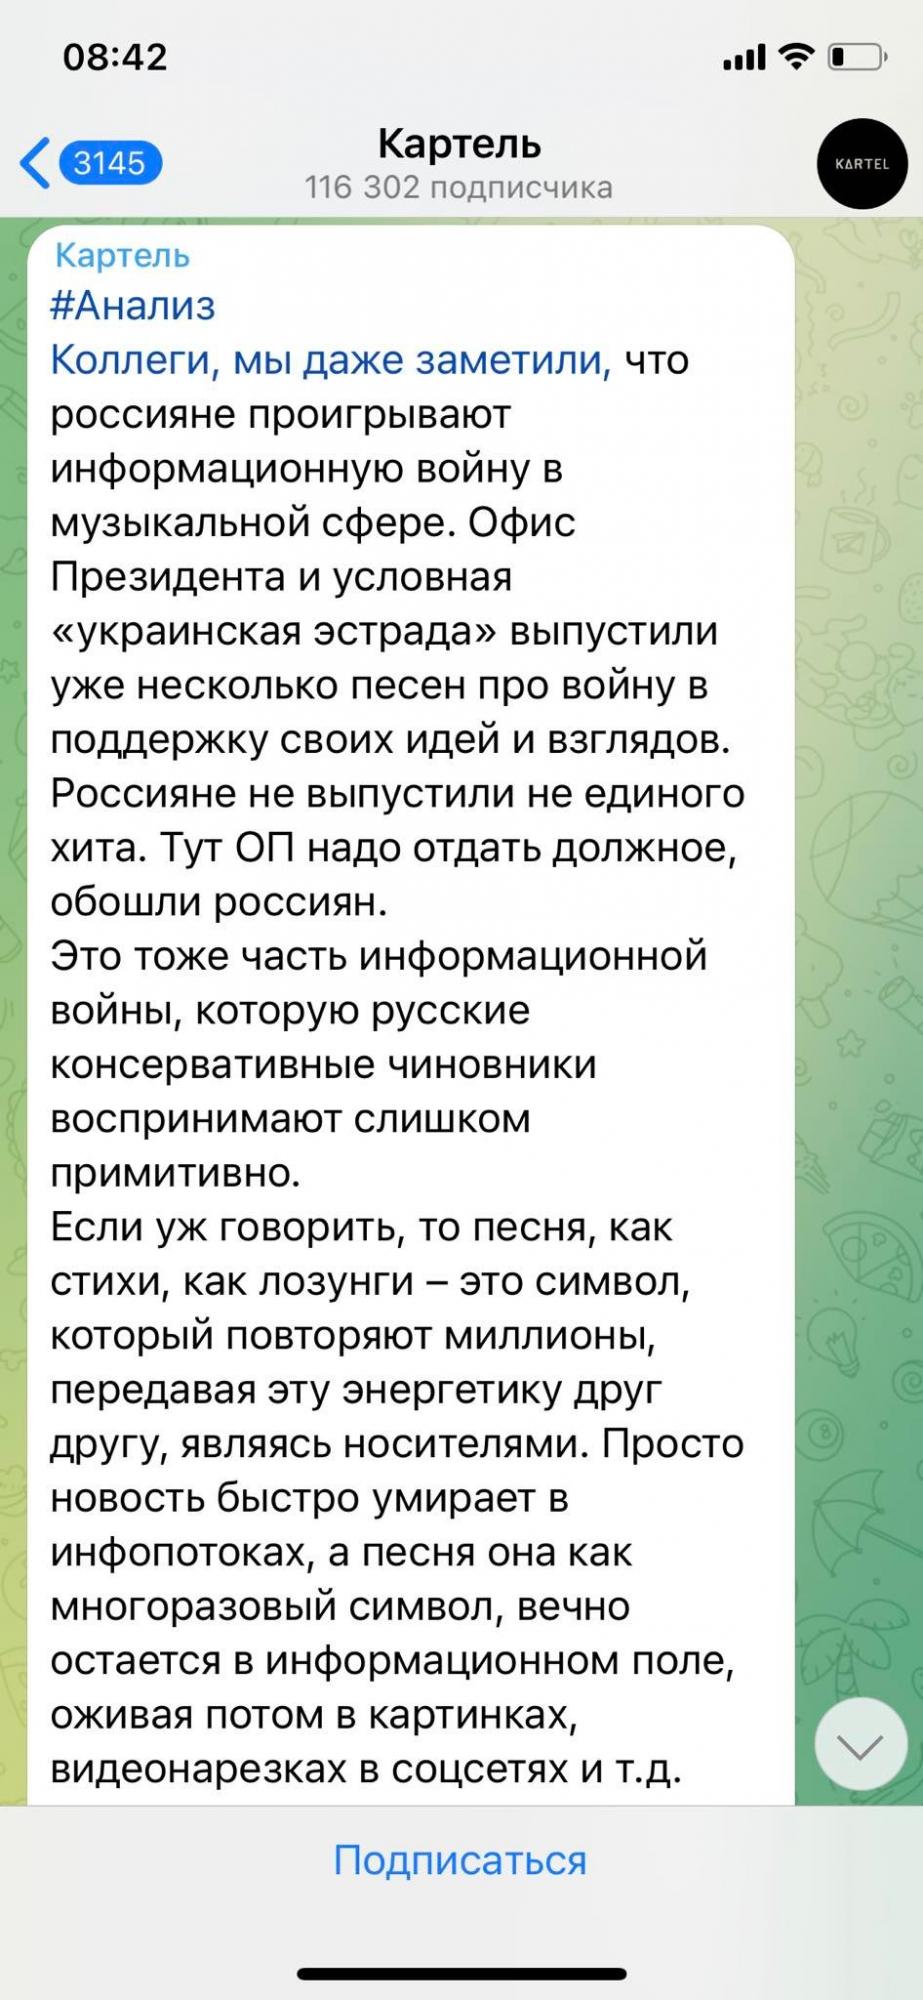 Телеграмм по русски как пишется фото 12